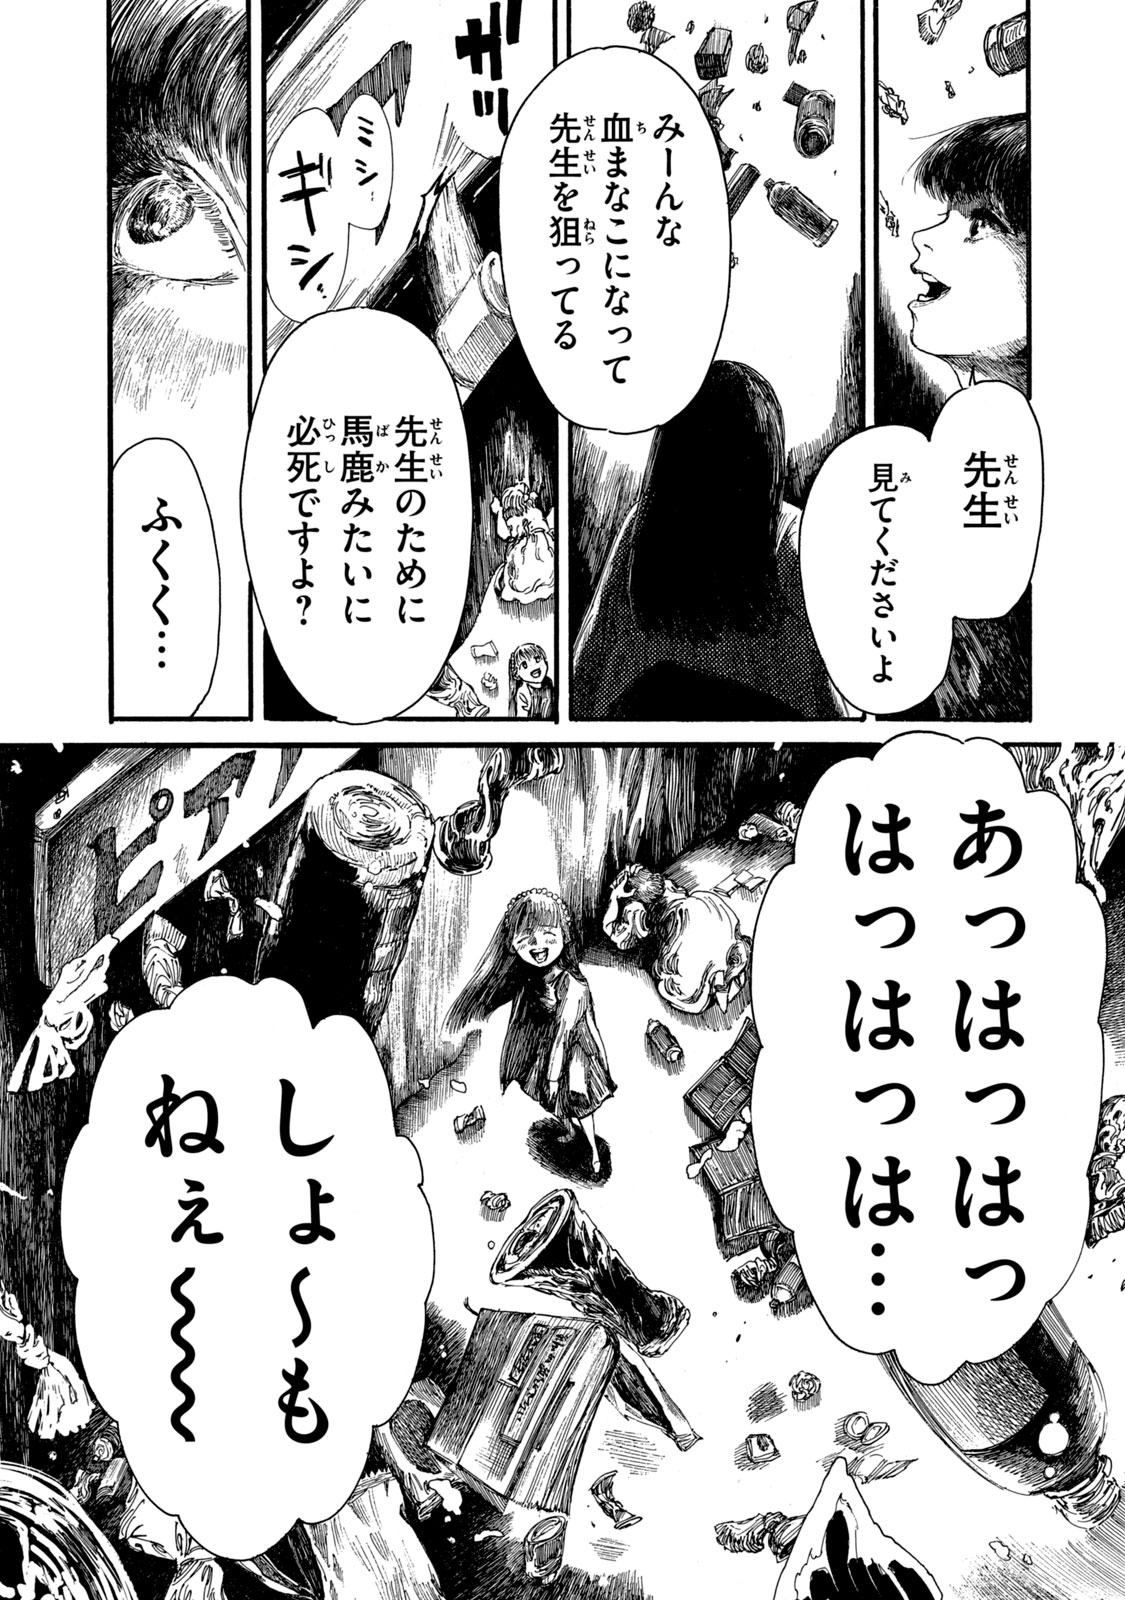 Watashi no Hara no Naka no Bakemono - Chapter 13 - Page 14